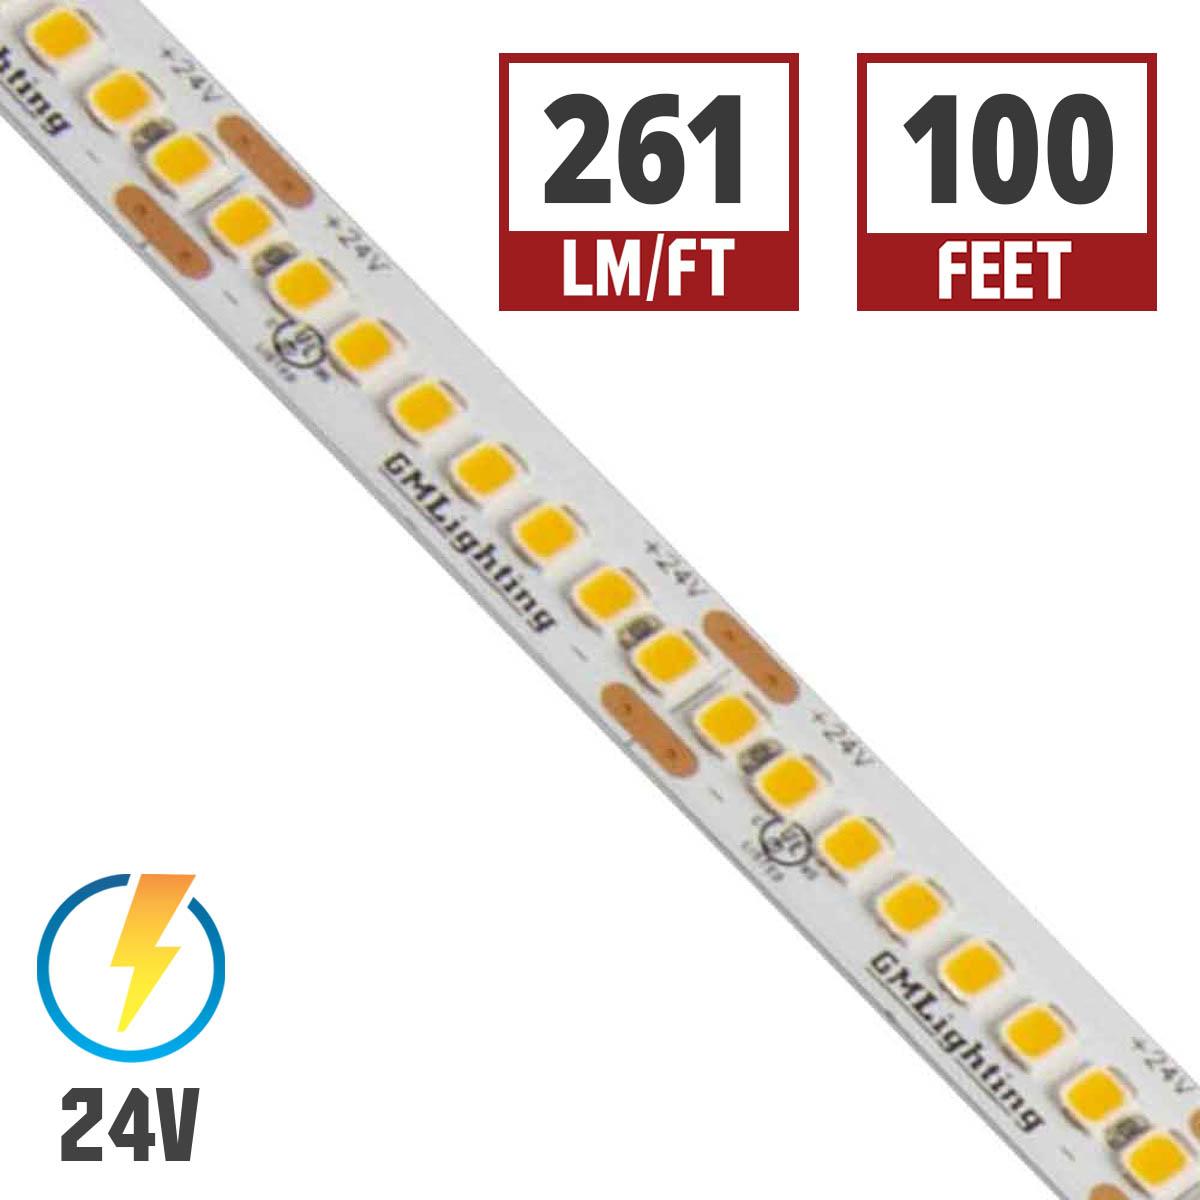 LTR-S Spec LED Strip Light, 220 Lumens per Ft, 2.5 watts per Ft, 24V